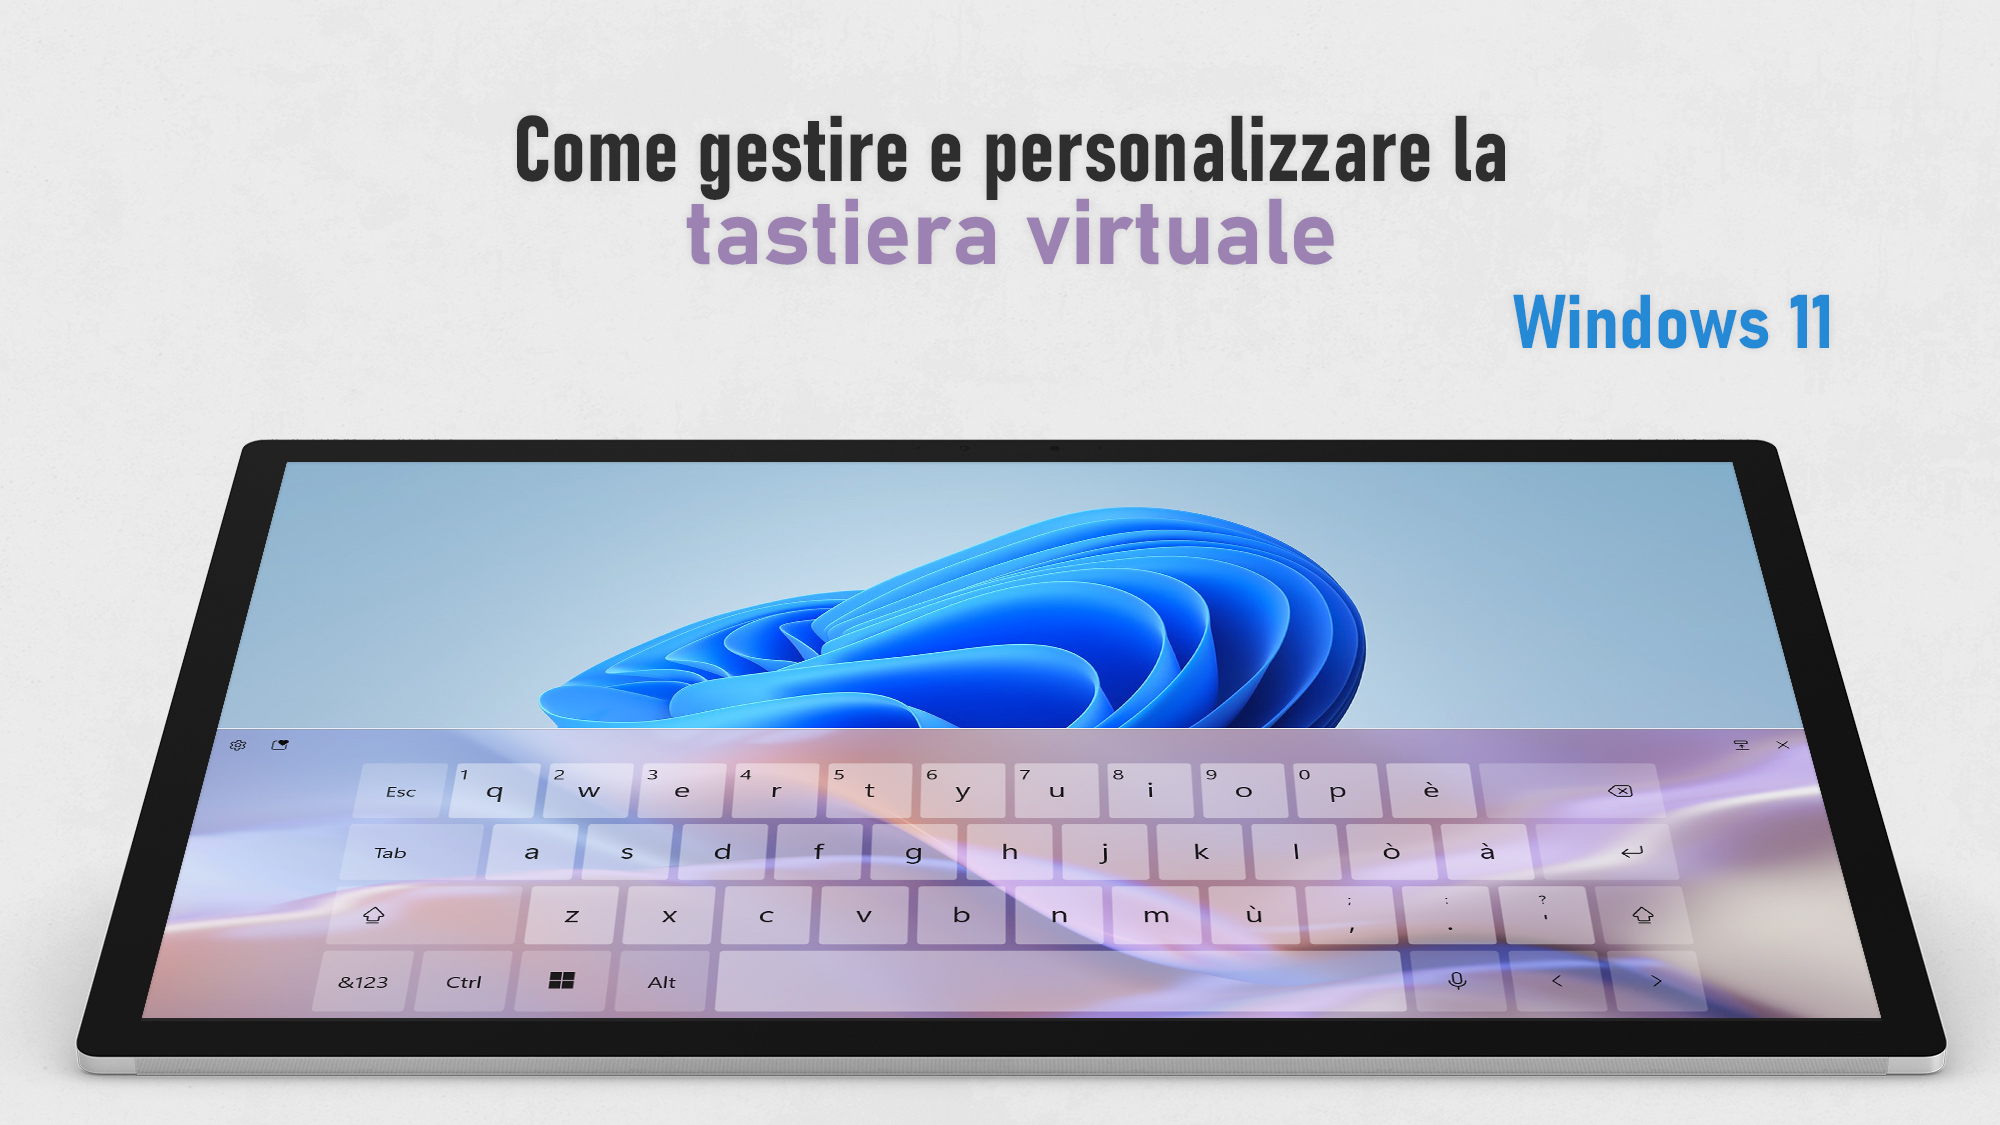 Windows 11 - Come gestire e personalizzare la tastiera virtuale